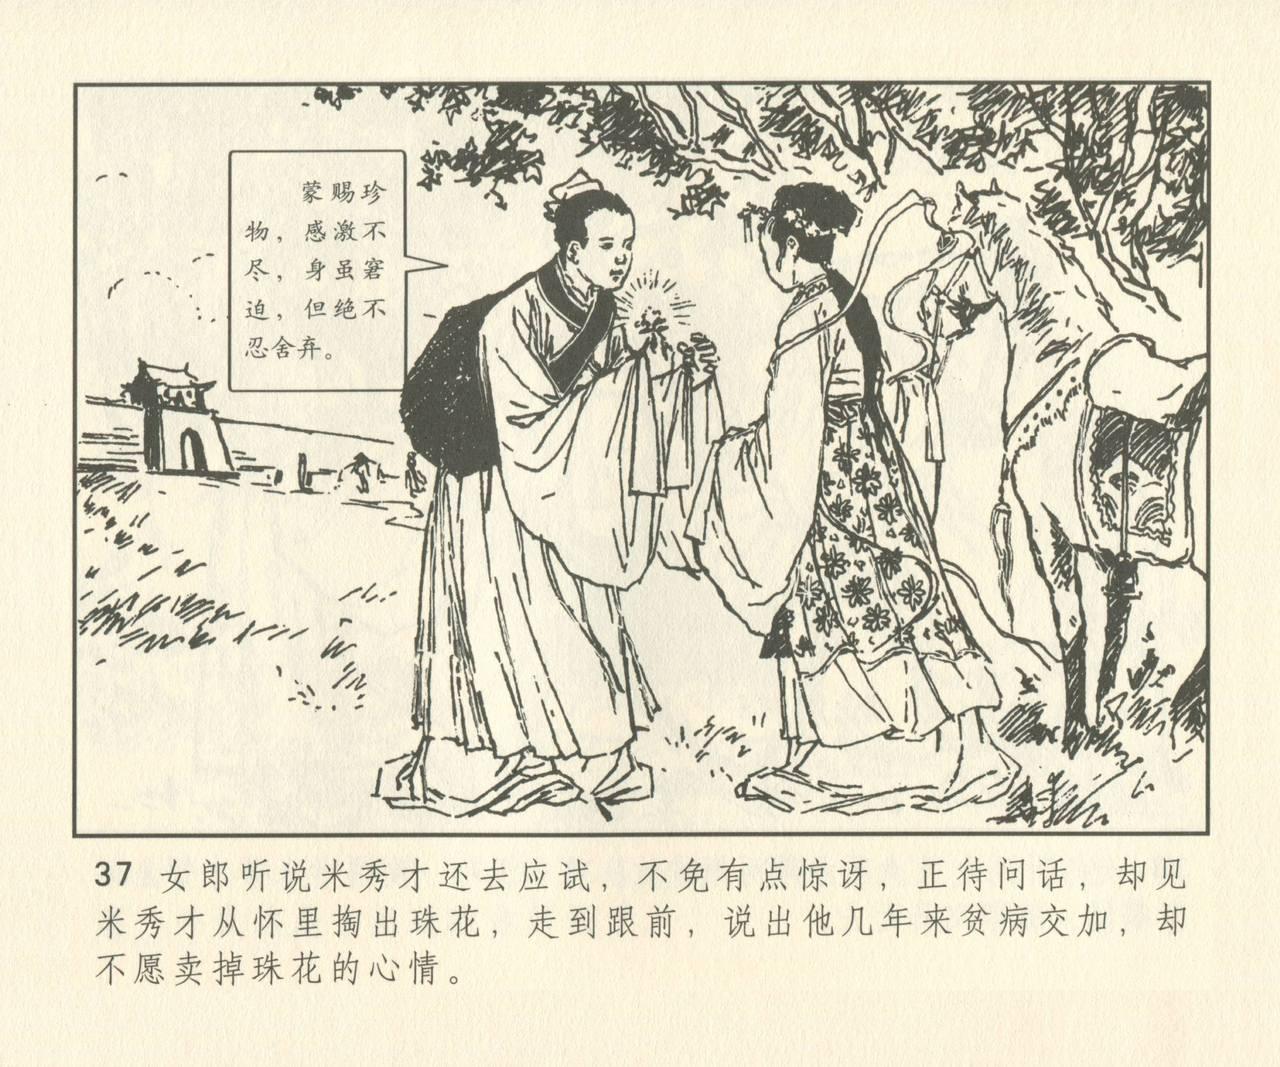 聊斋志异 张玮等绘 天津人民美术出版社 卷二十一 ~ 三十 165